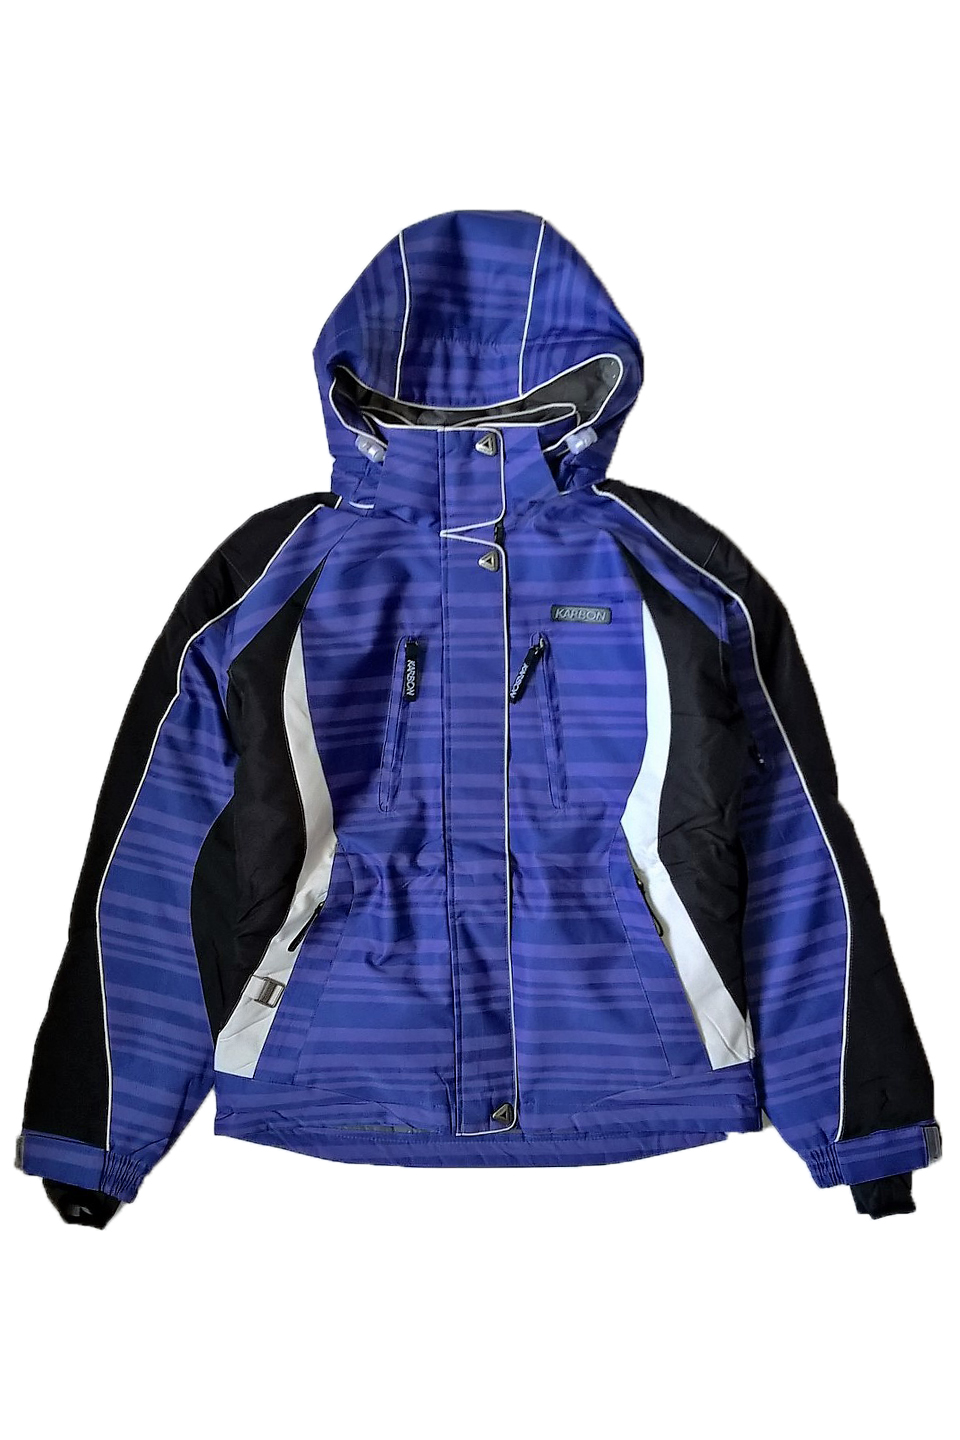 Куртка лыжная Karbon женская - 8054